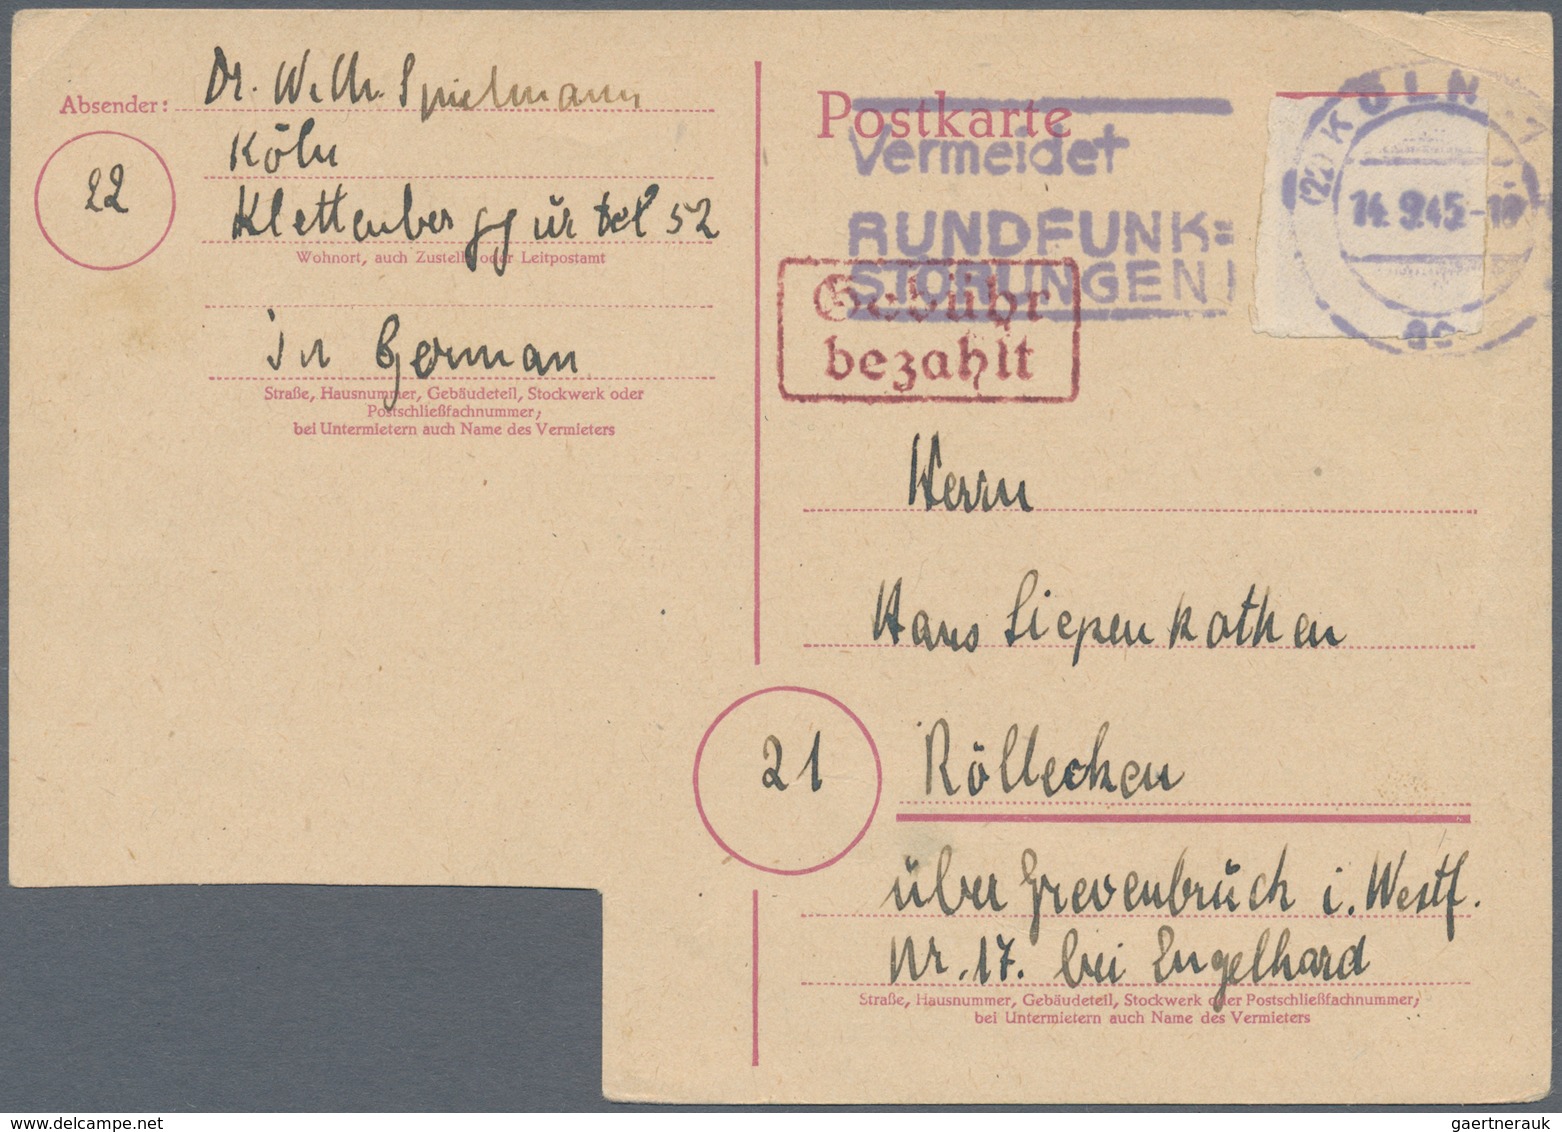 Alliierte Besetzung - Gebühr Bezahlt: 1945/1948, Rheinland/Mosel/Pfalz Plz 22, saubere Partie von ca